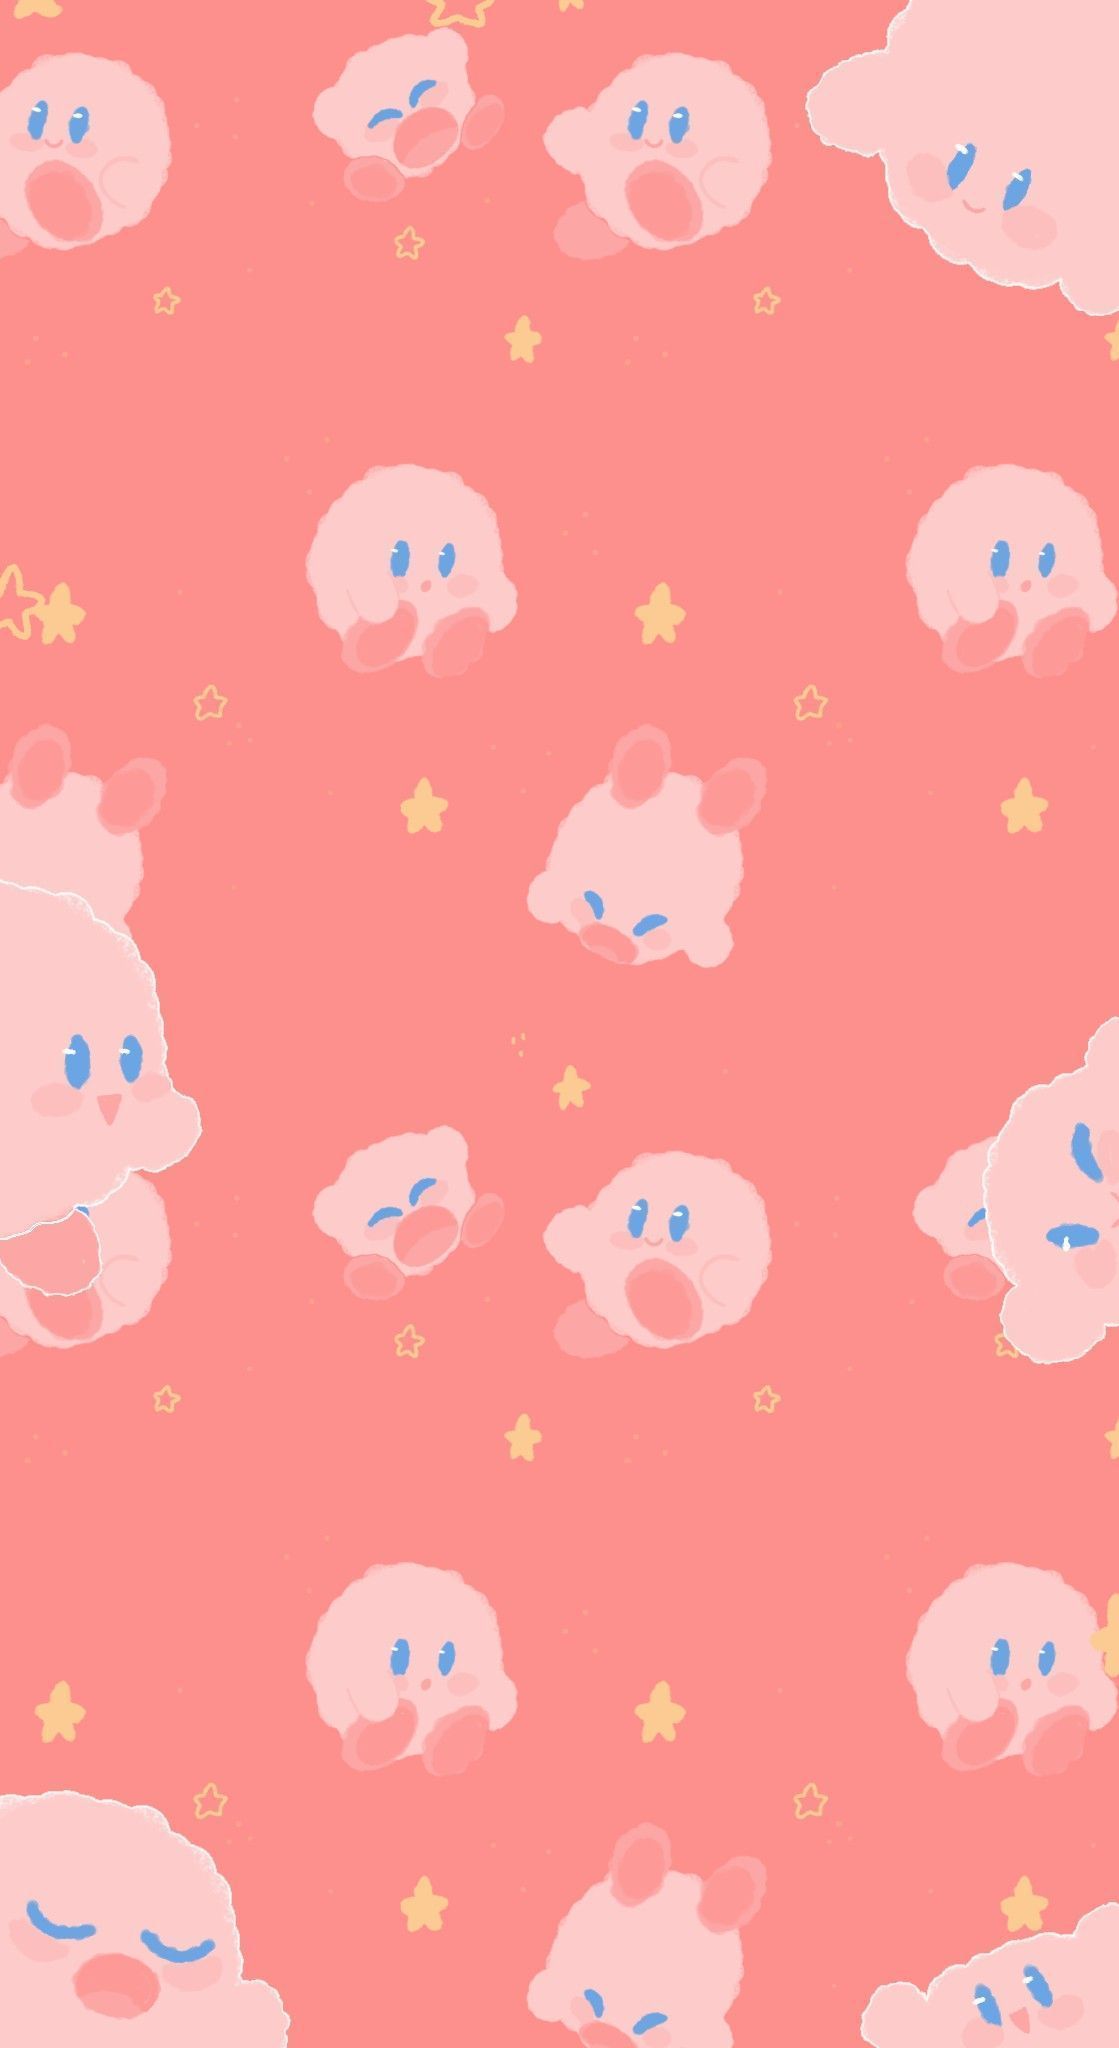 F2U KIRBY WALLPAPER. Kirby, Wallpaper iphone cute, Kawaii wallpaper